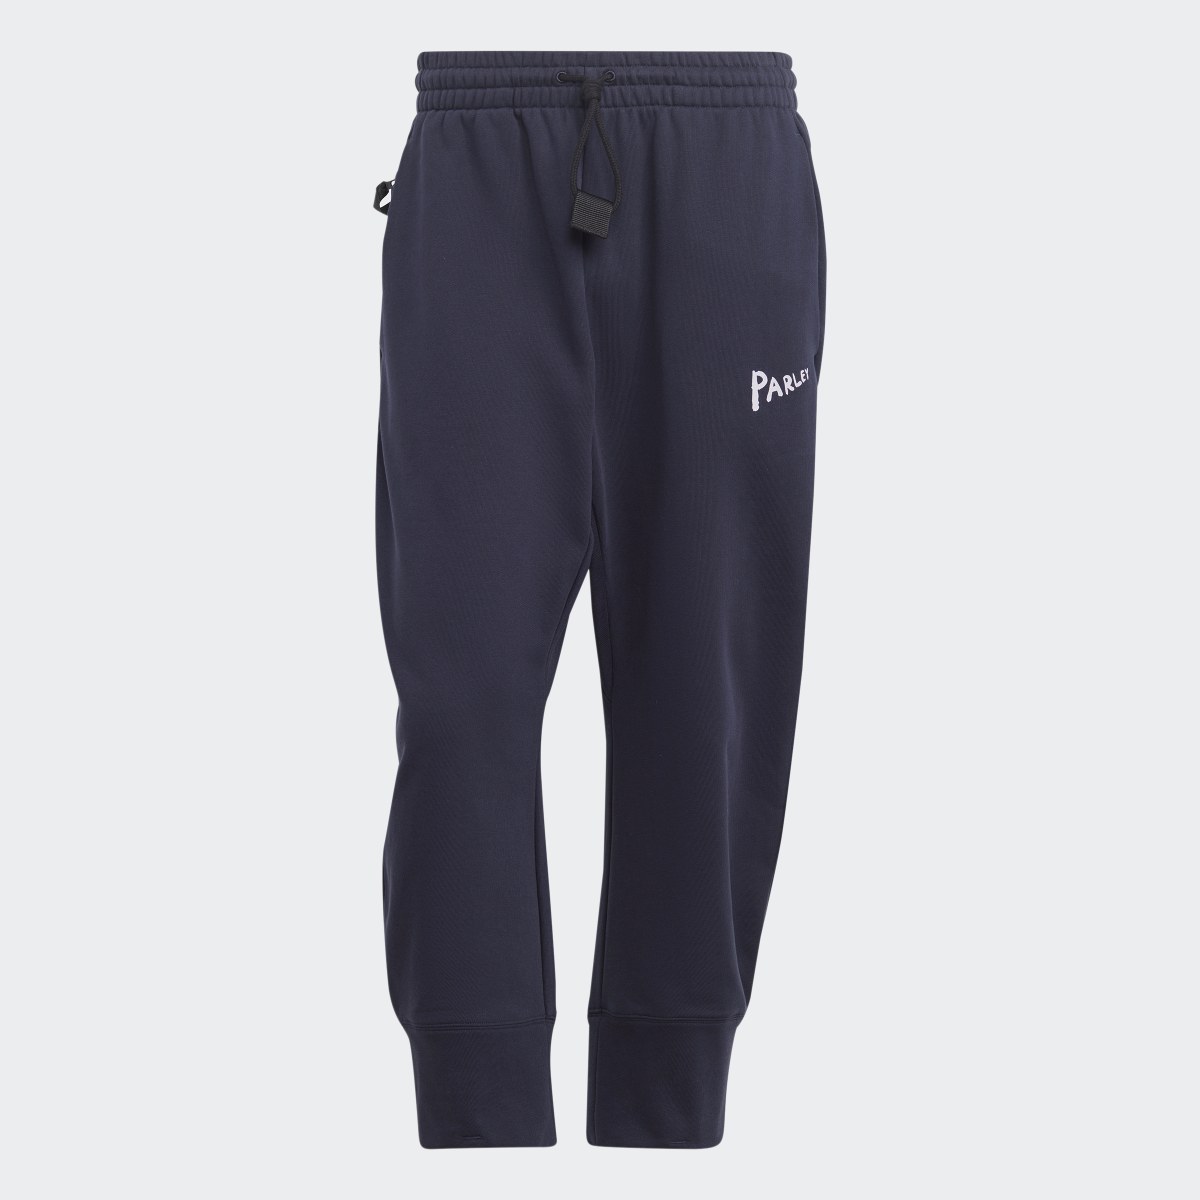 Adidas x Parley 7/8 Pants (Gender Neutral). 4